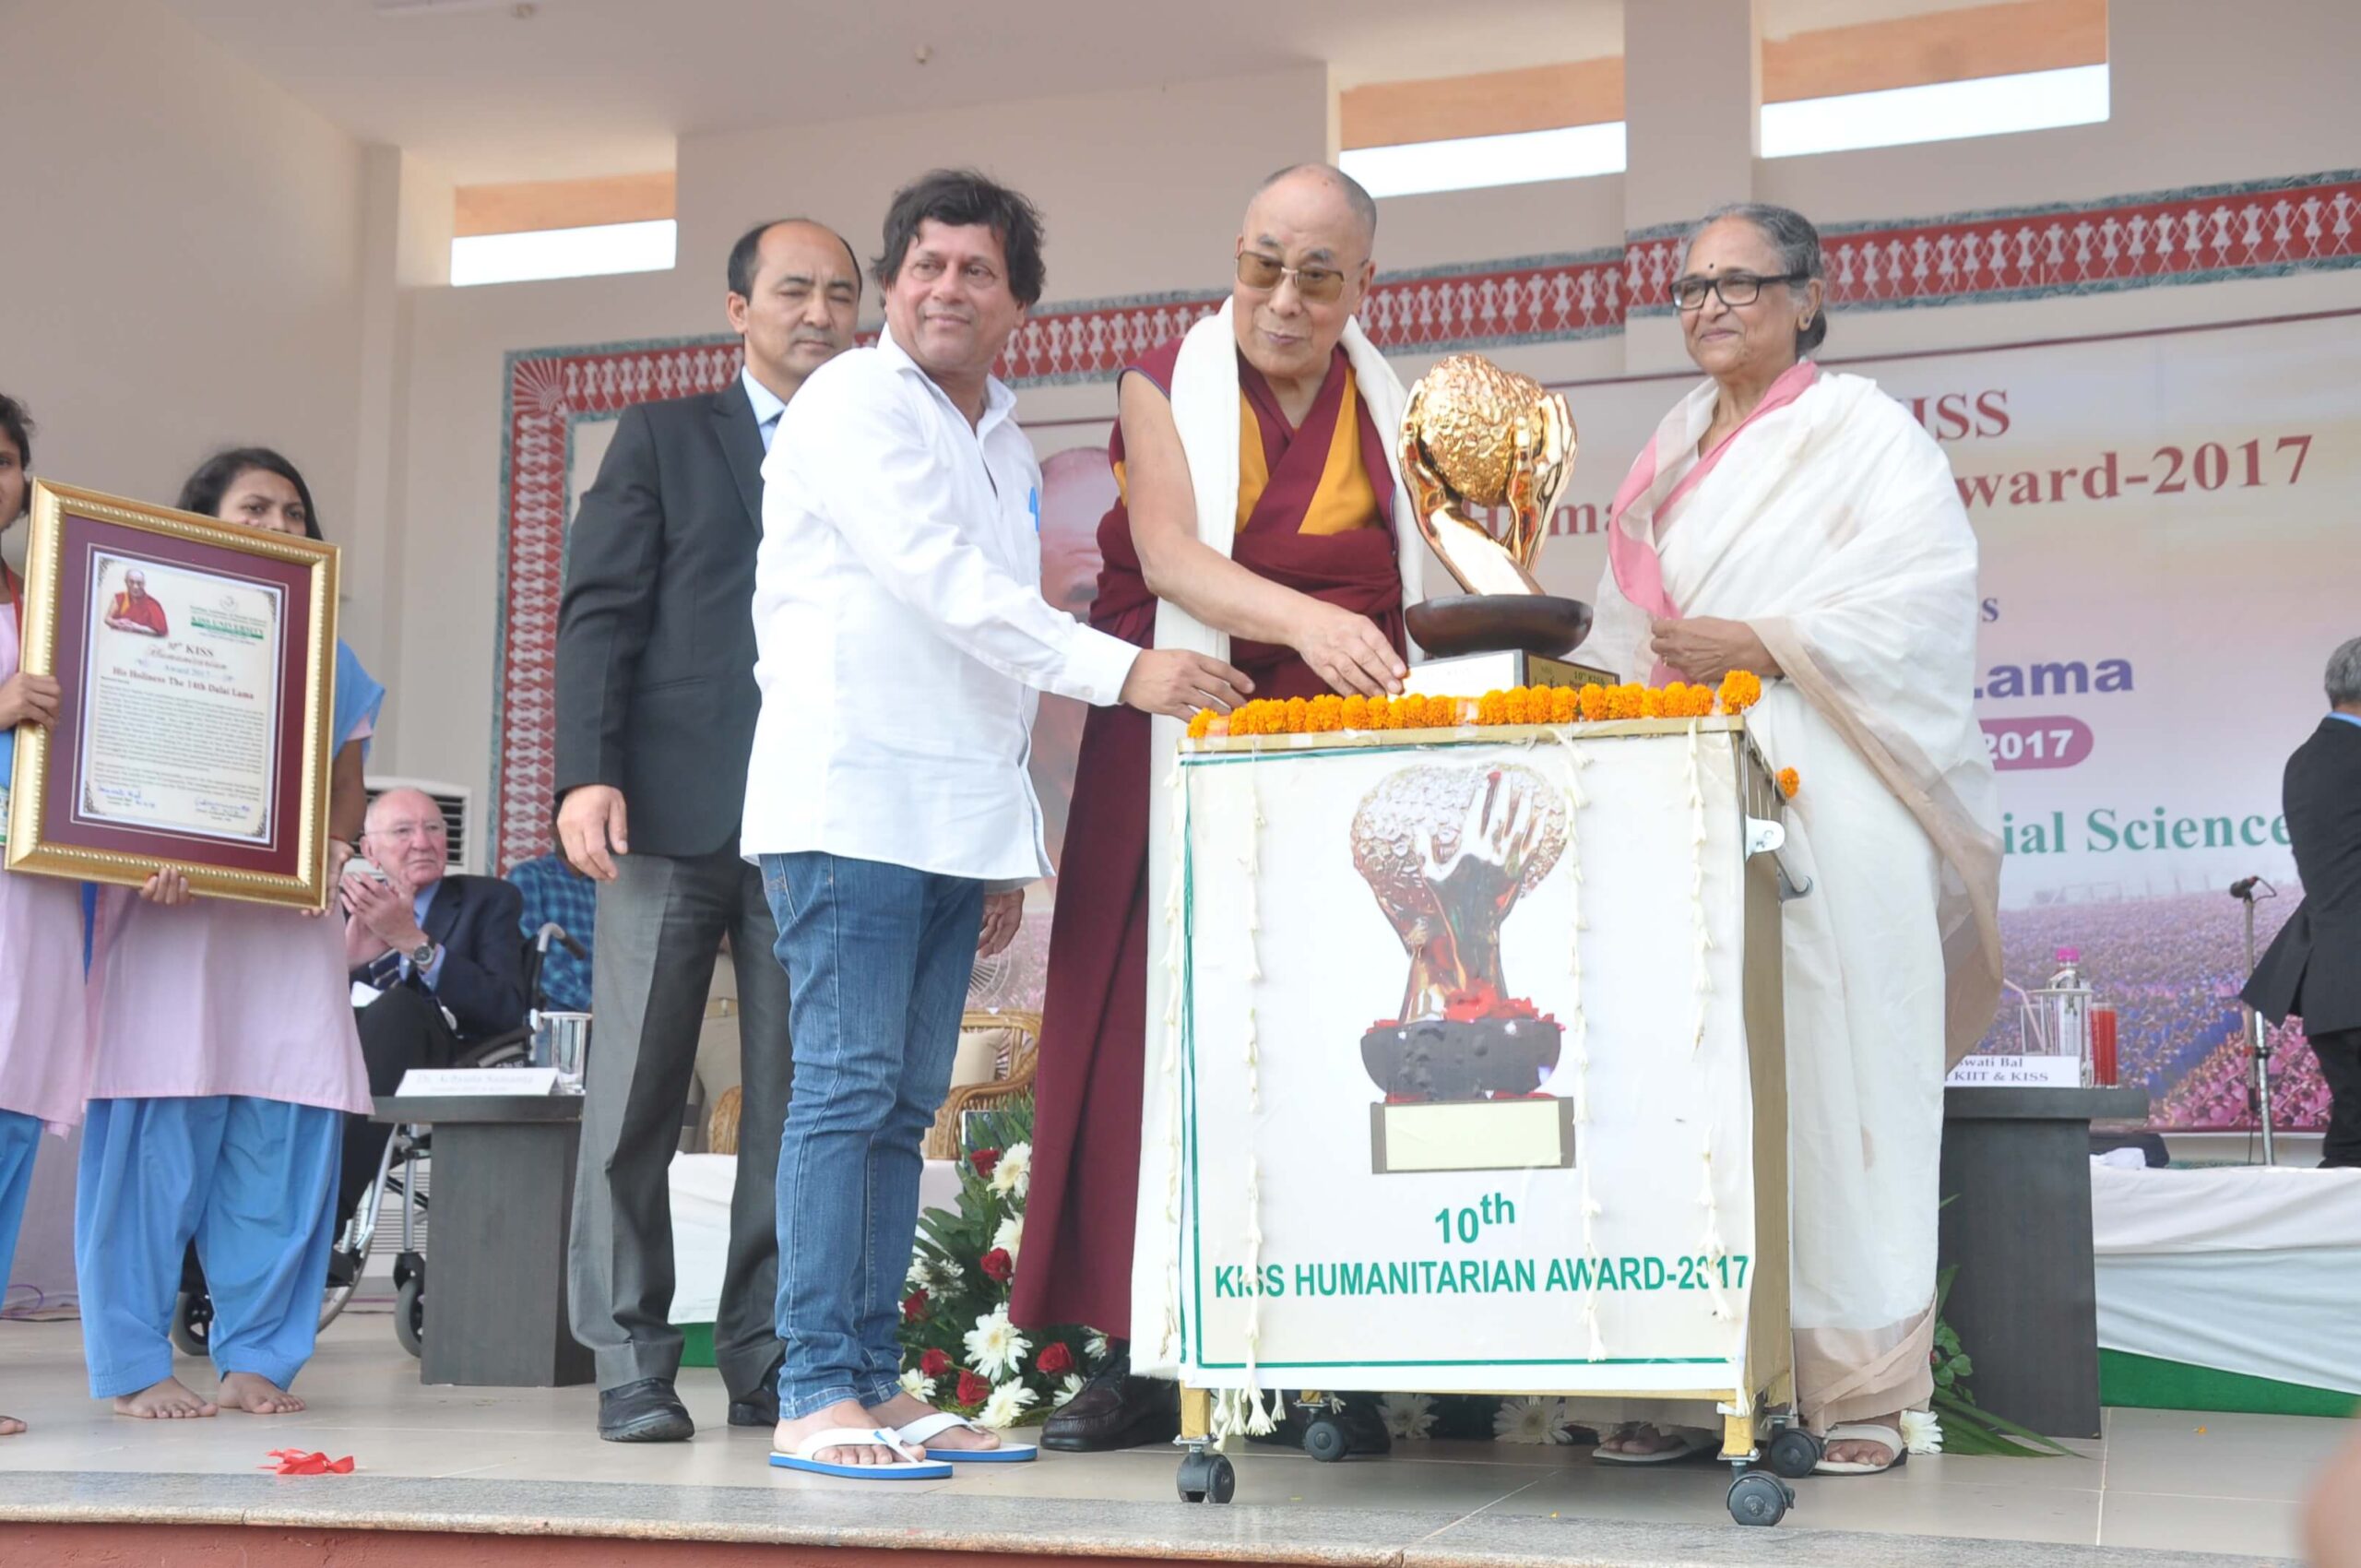 His Holiness The Dalai Lama receives KISS Humanitarian Award 2017